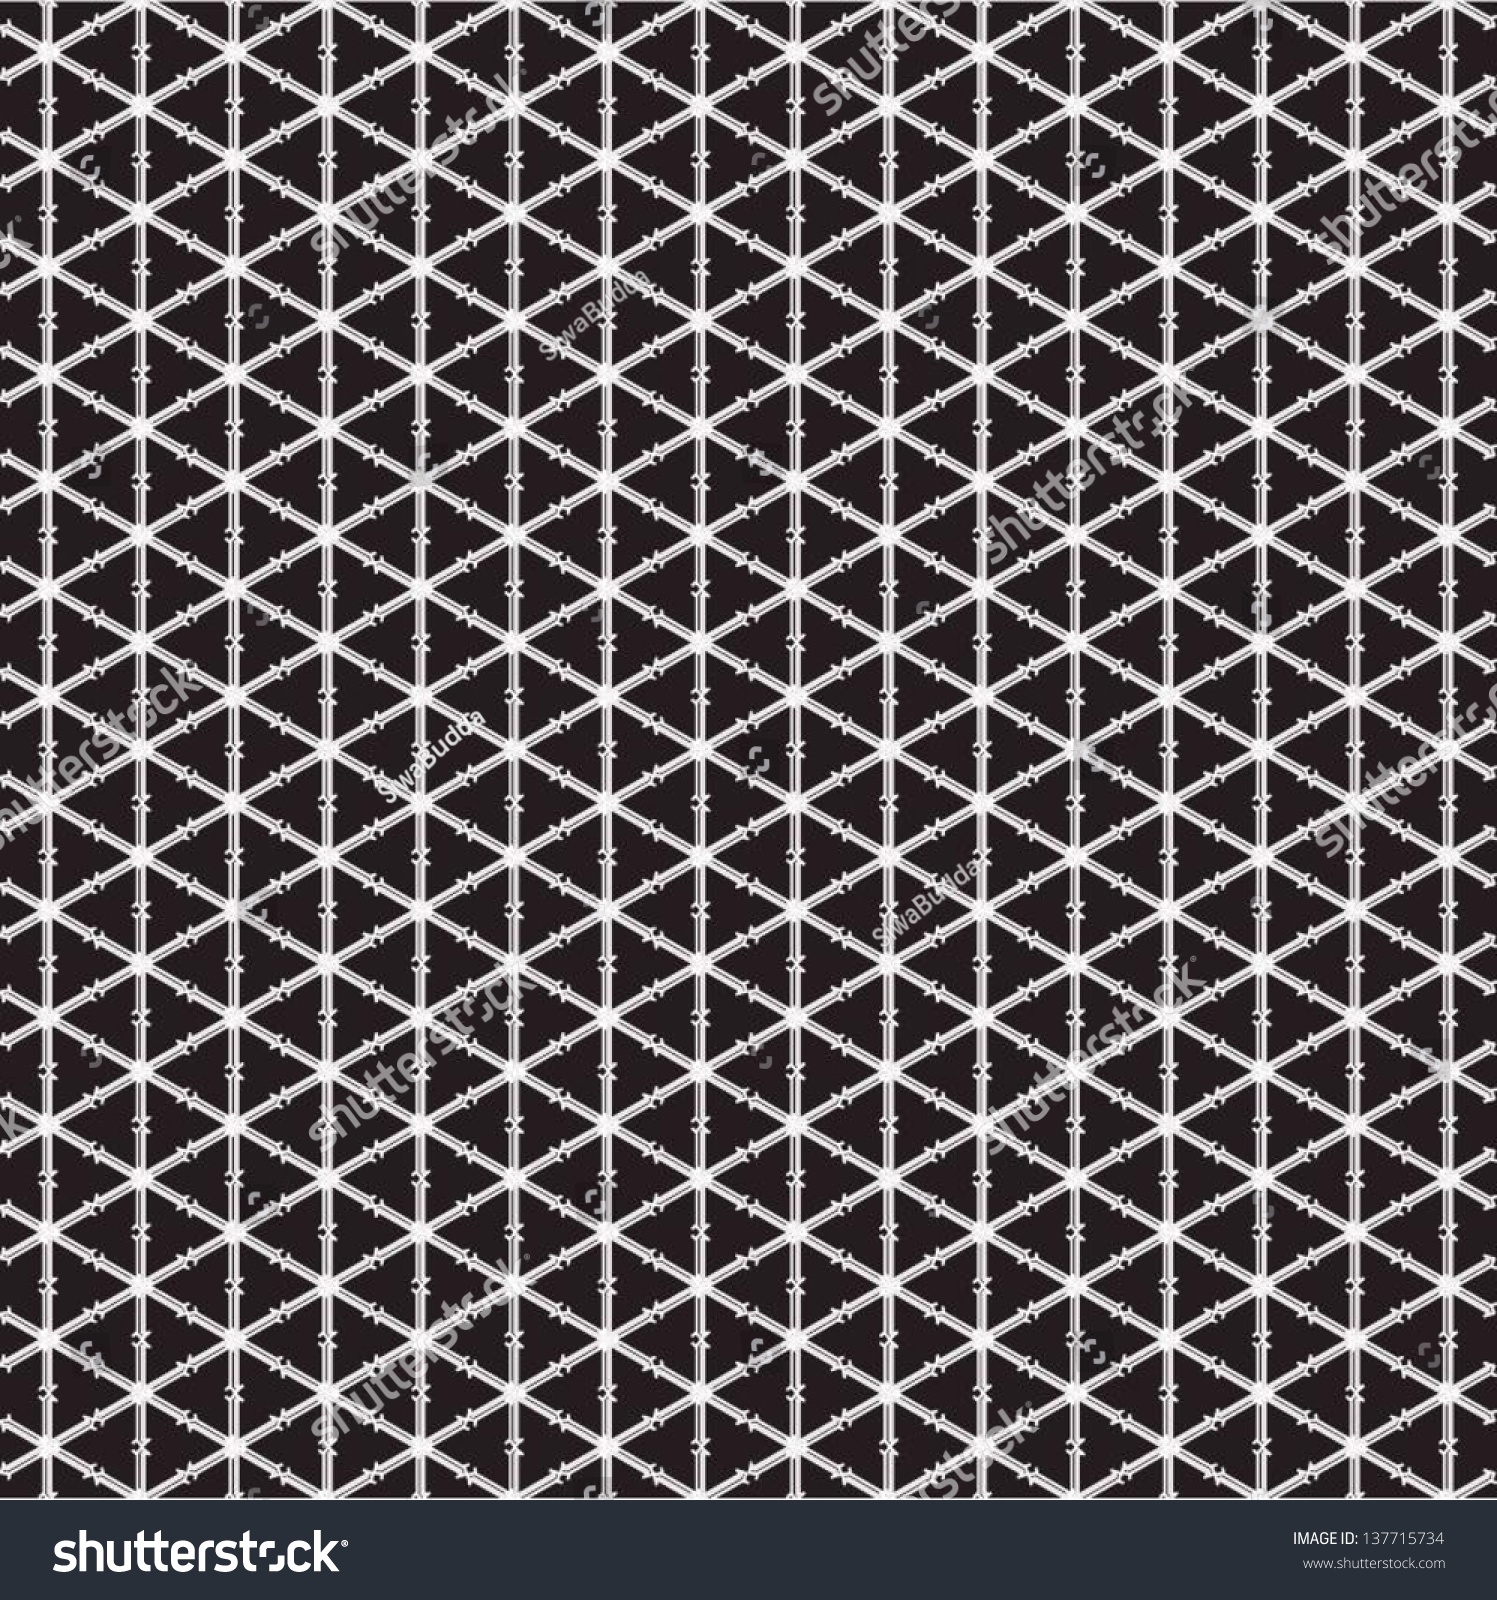 Vector Fishnet Pattern In Ornamental Style. - 137715734 : Shutterstock